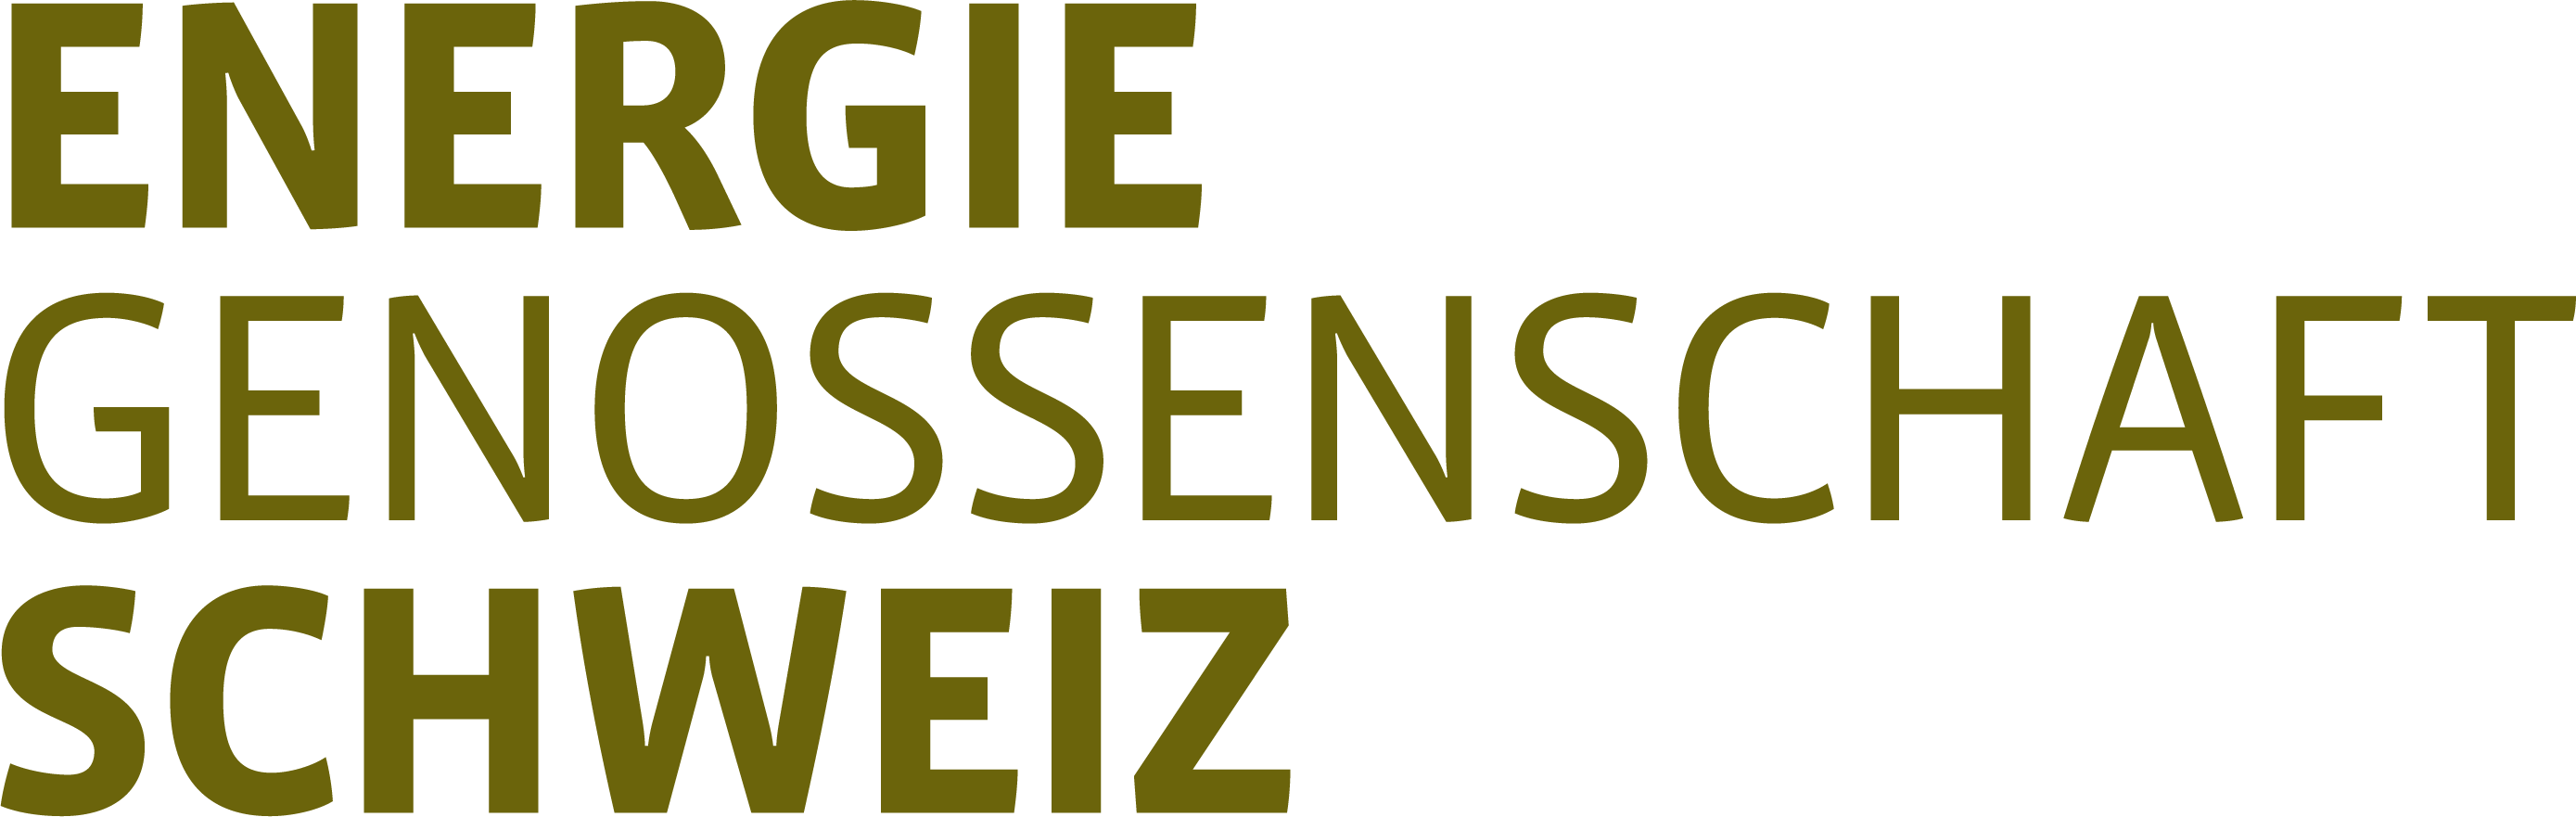 Energie Genossenschaft Schweiz – Logo